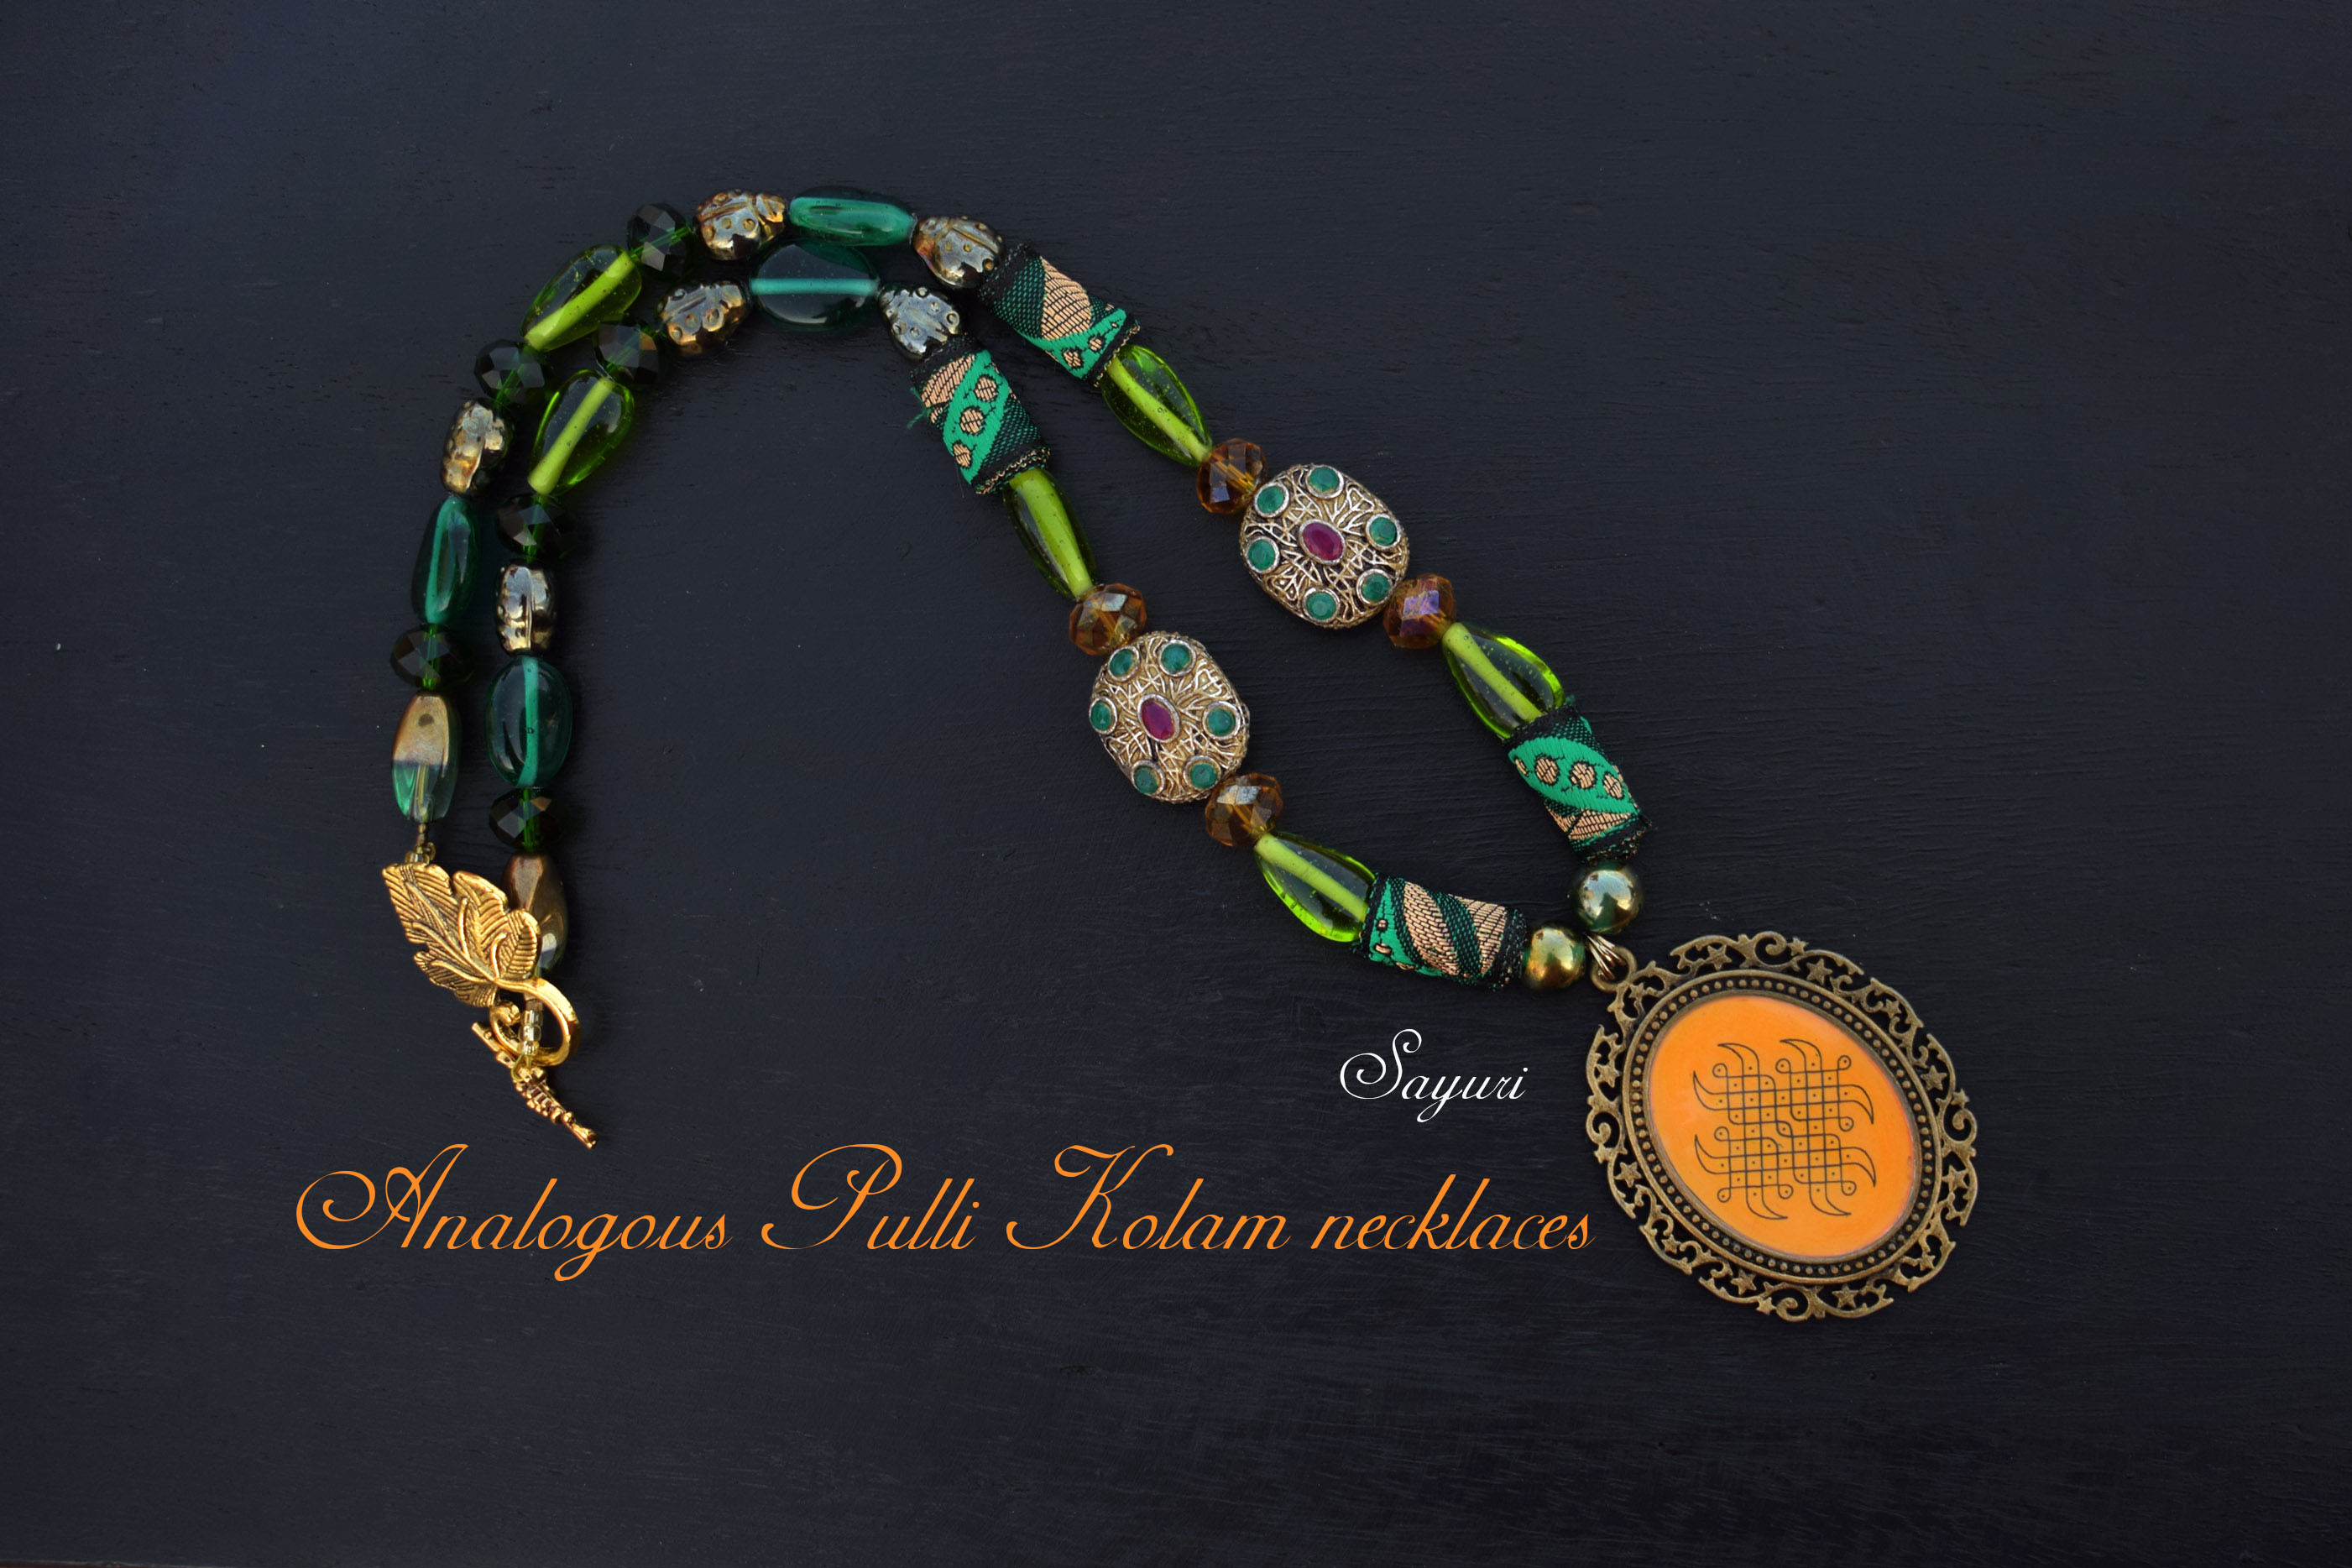 Analogous Pulli Kolam necklaces